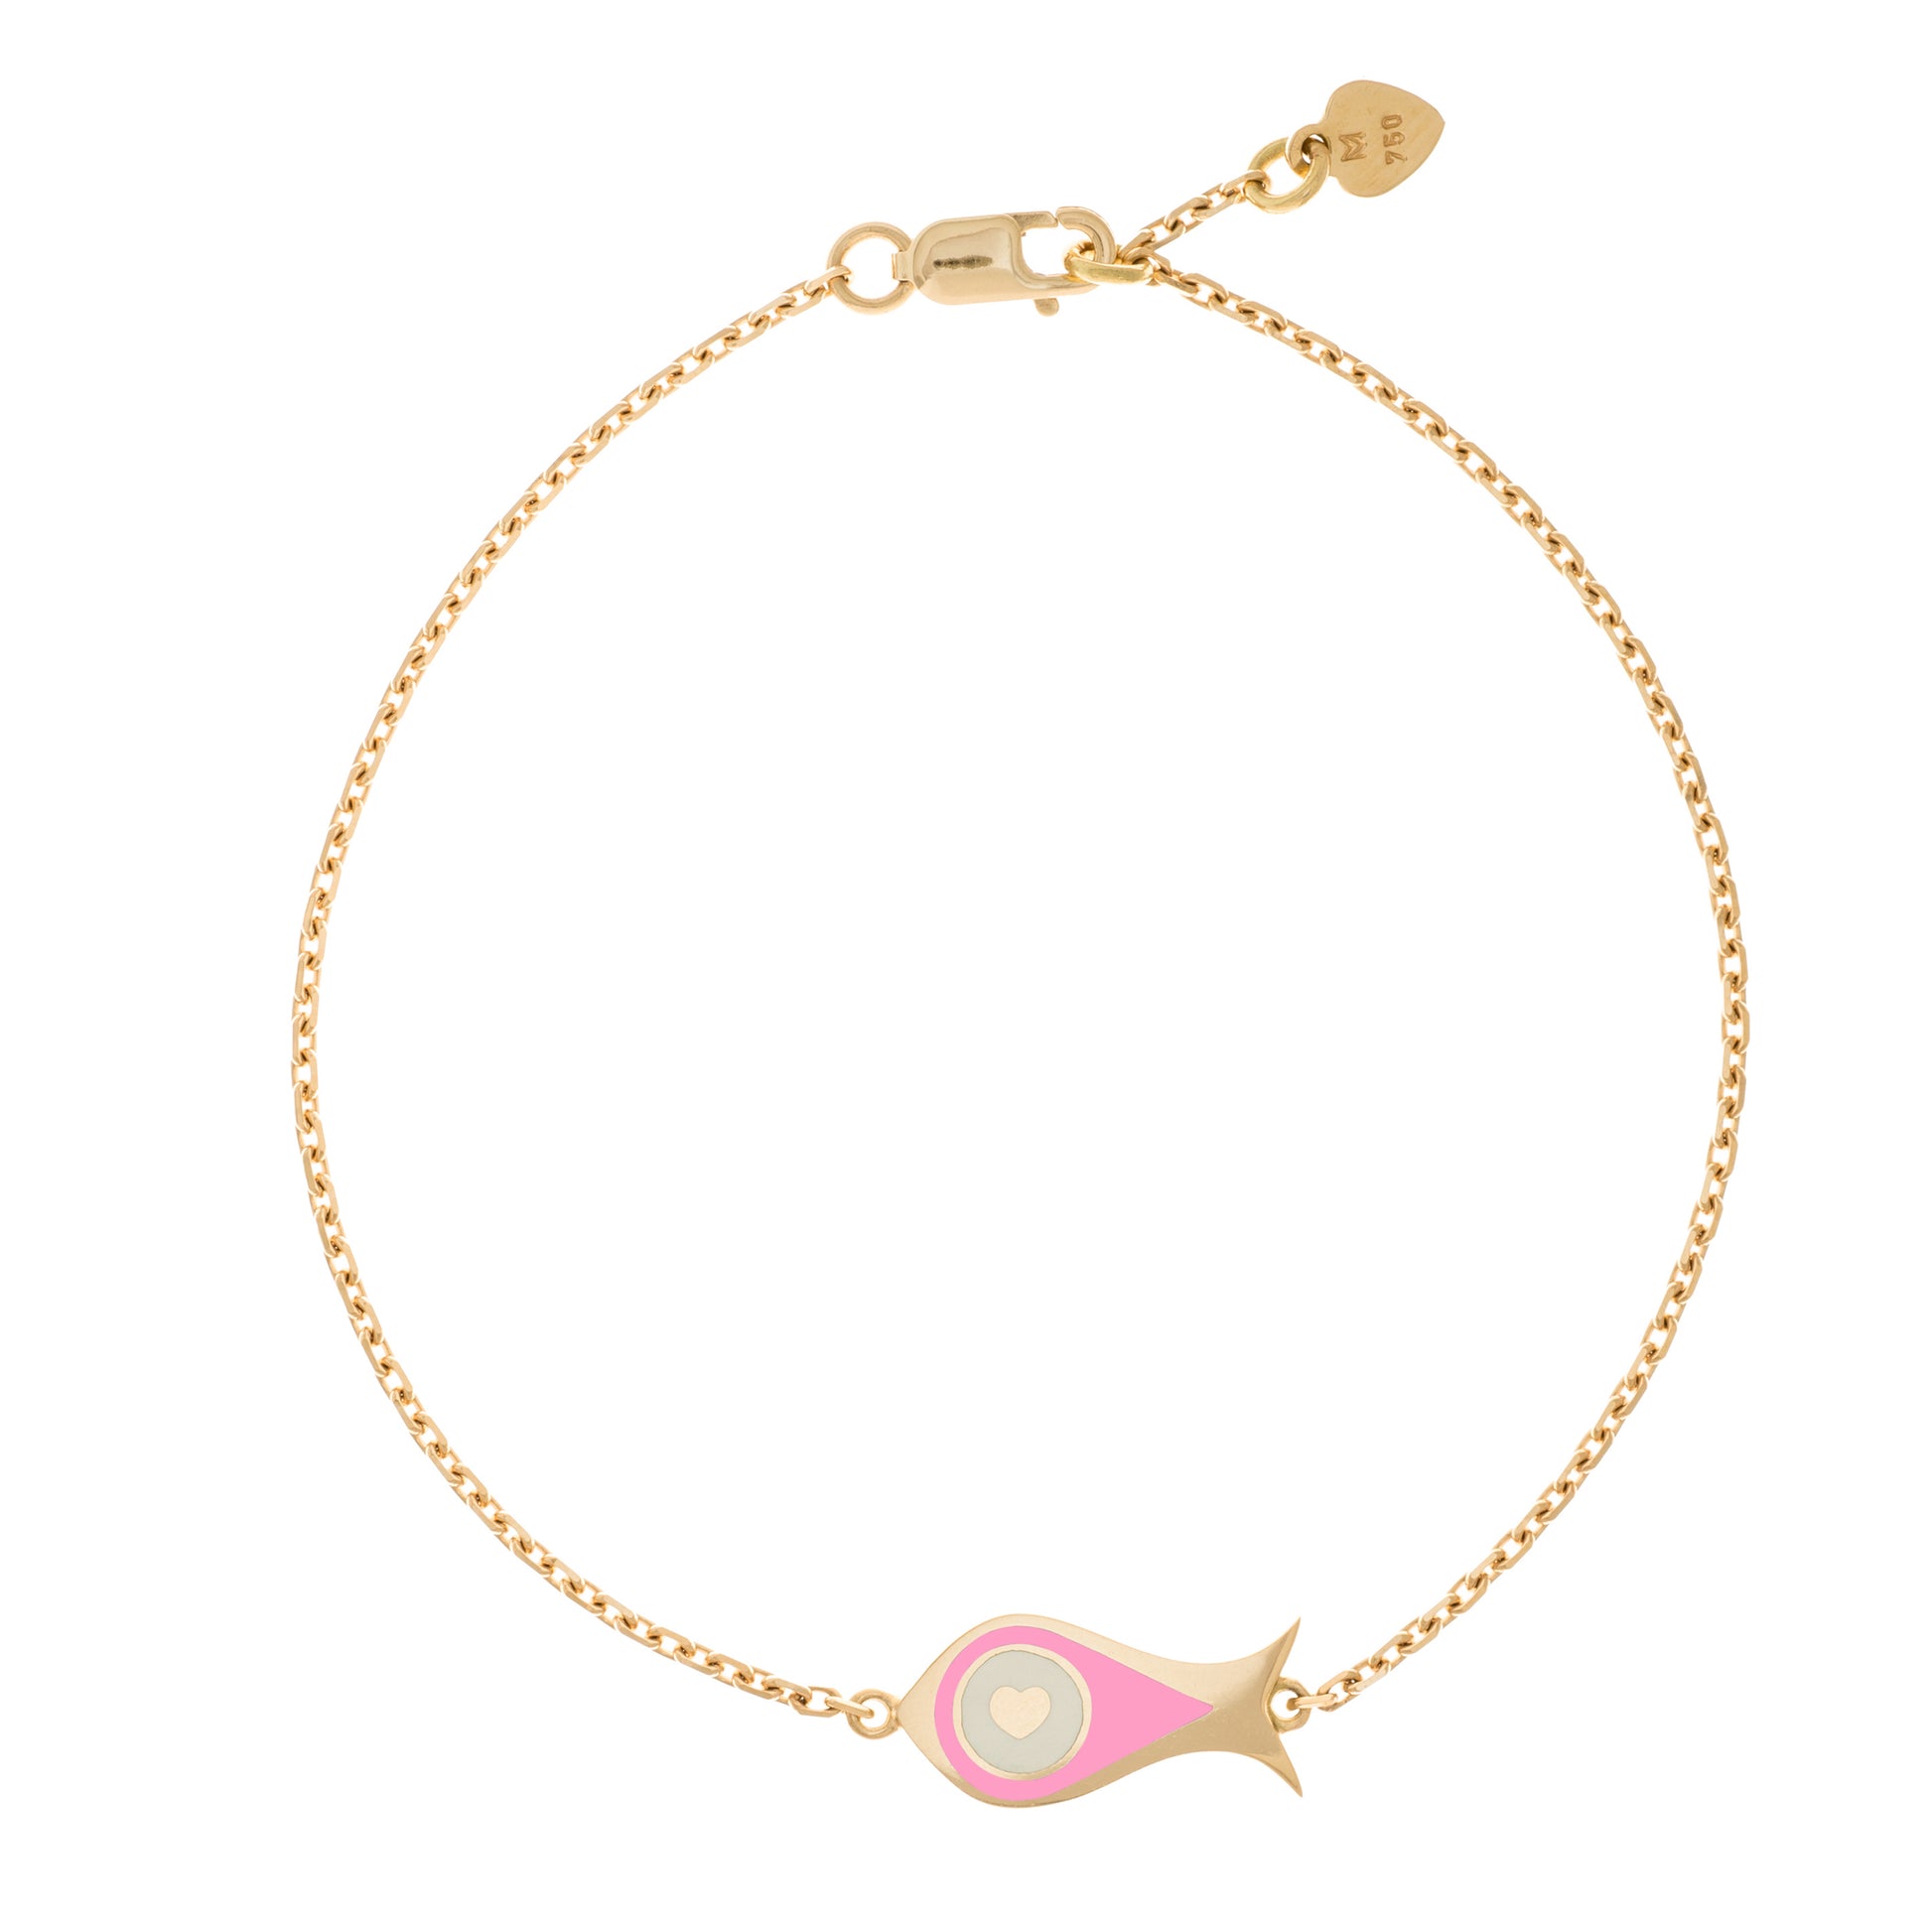 MORA bijoux, bracelet Poisson-coeur lchthys émaillé rose d'un diamètre de 15mm en or jaune 18 carats. Longueur de la chaîne 16cm avec un petit coeur en or jaune 18 carats soudé sur le fermoir. 